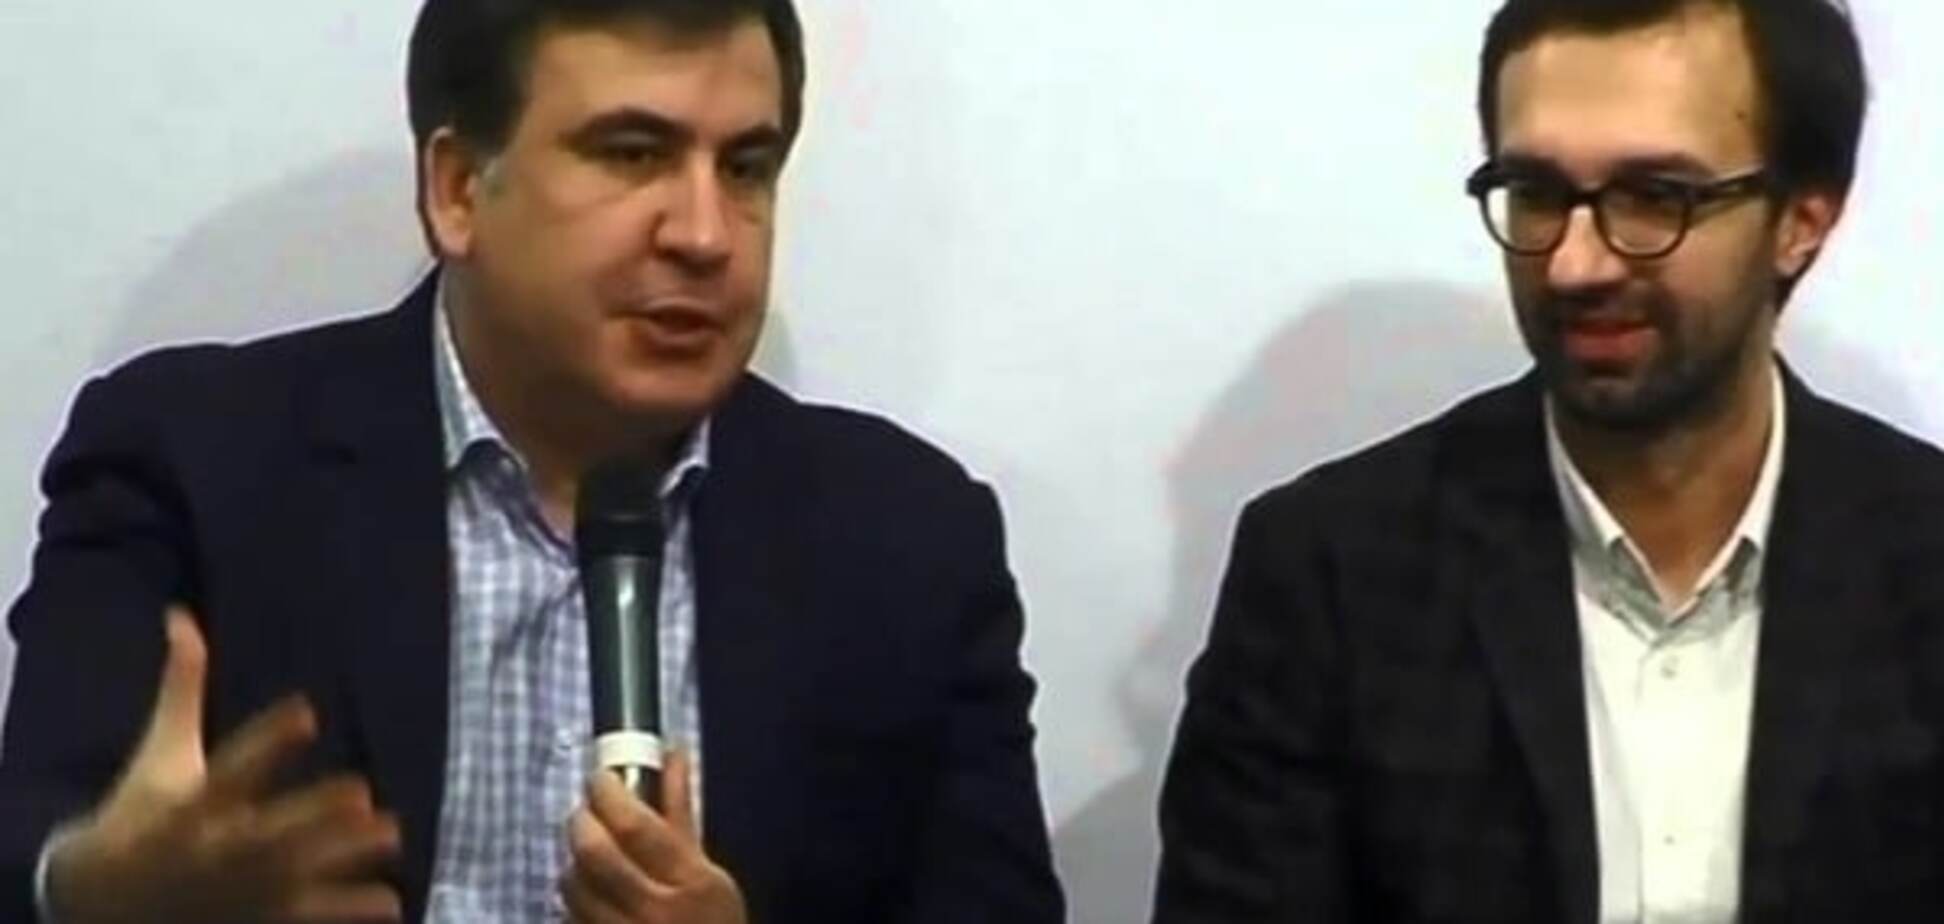 Прояснилась цель: Лещенко допустил создание антикоррупционной партии на базе движения Саакашвили